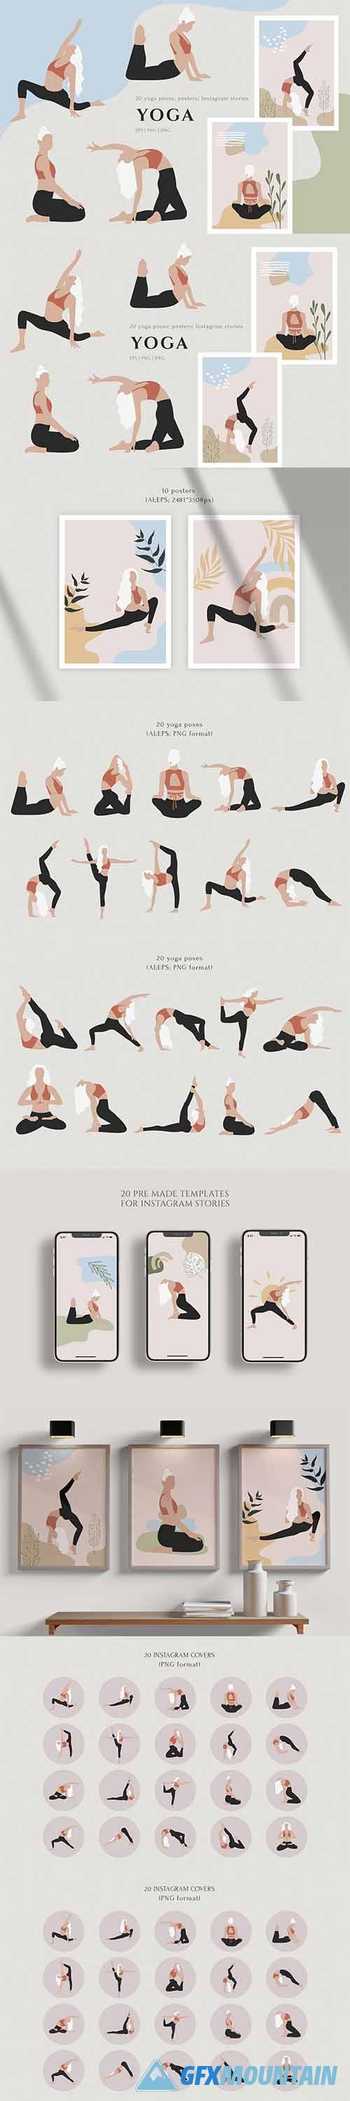 Yoga - Graphics Collection 5709152